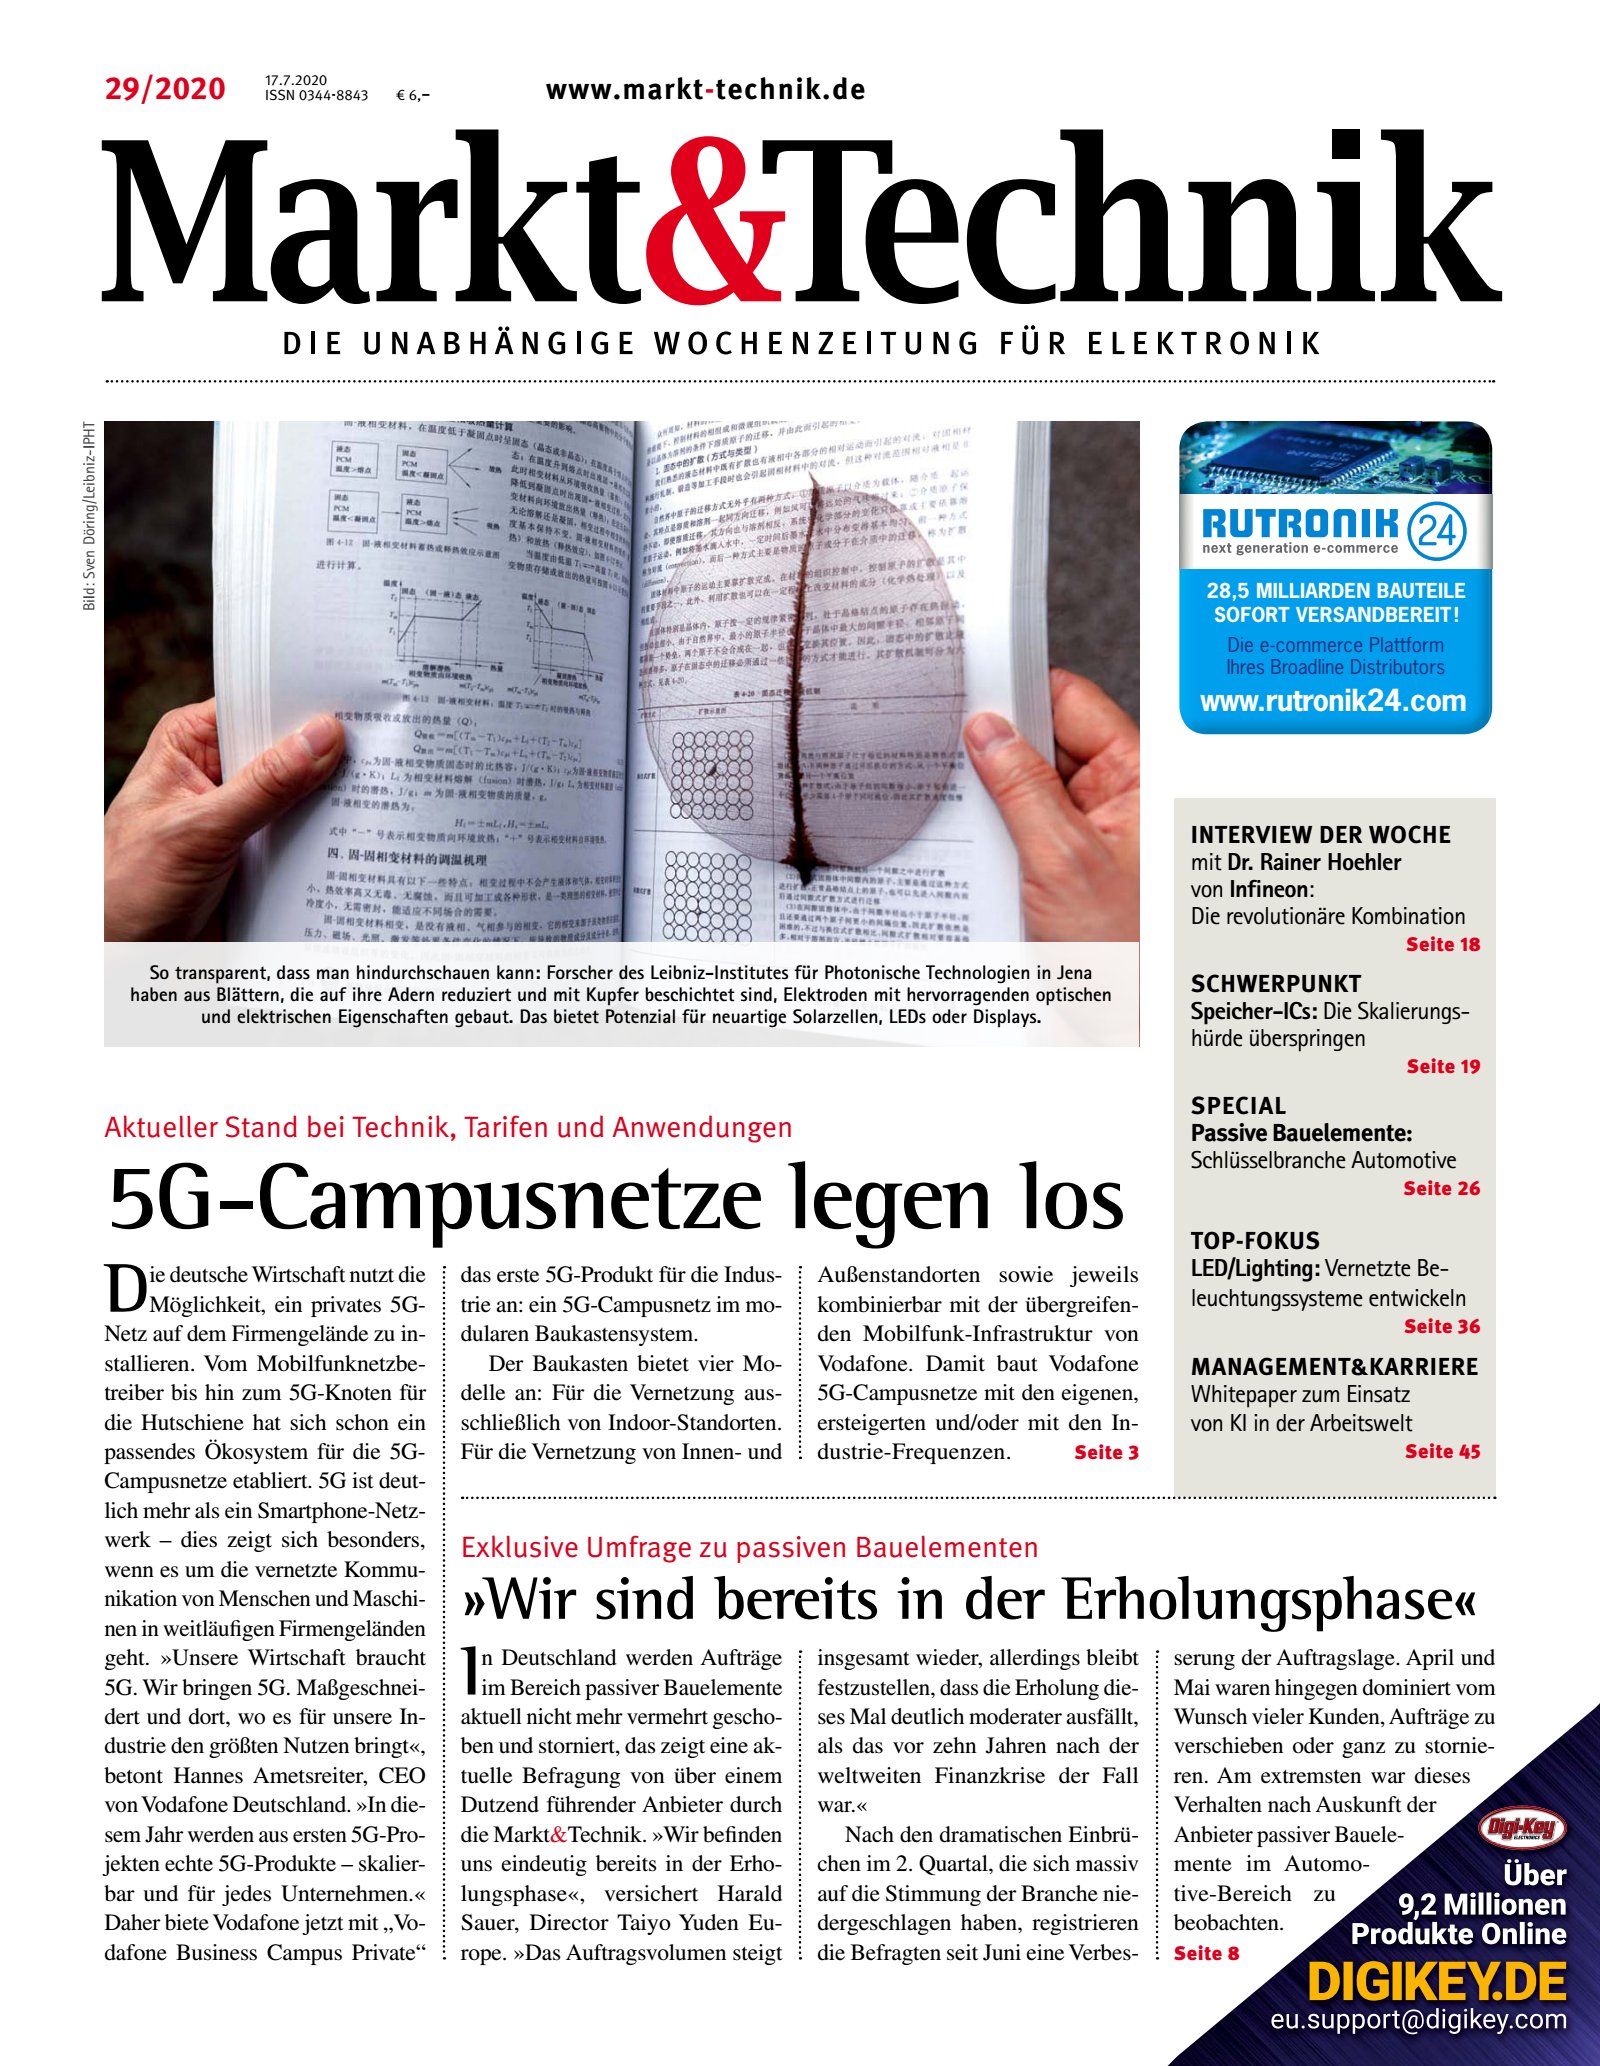 Markt&Technik 29/2020 Digital